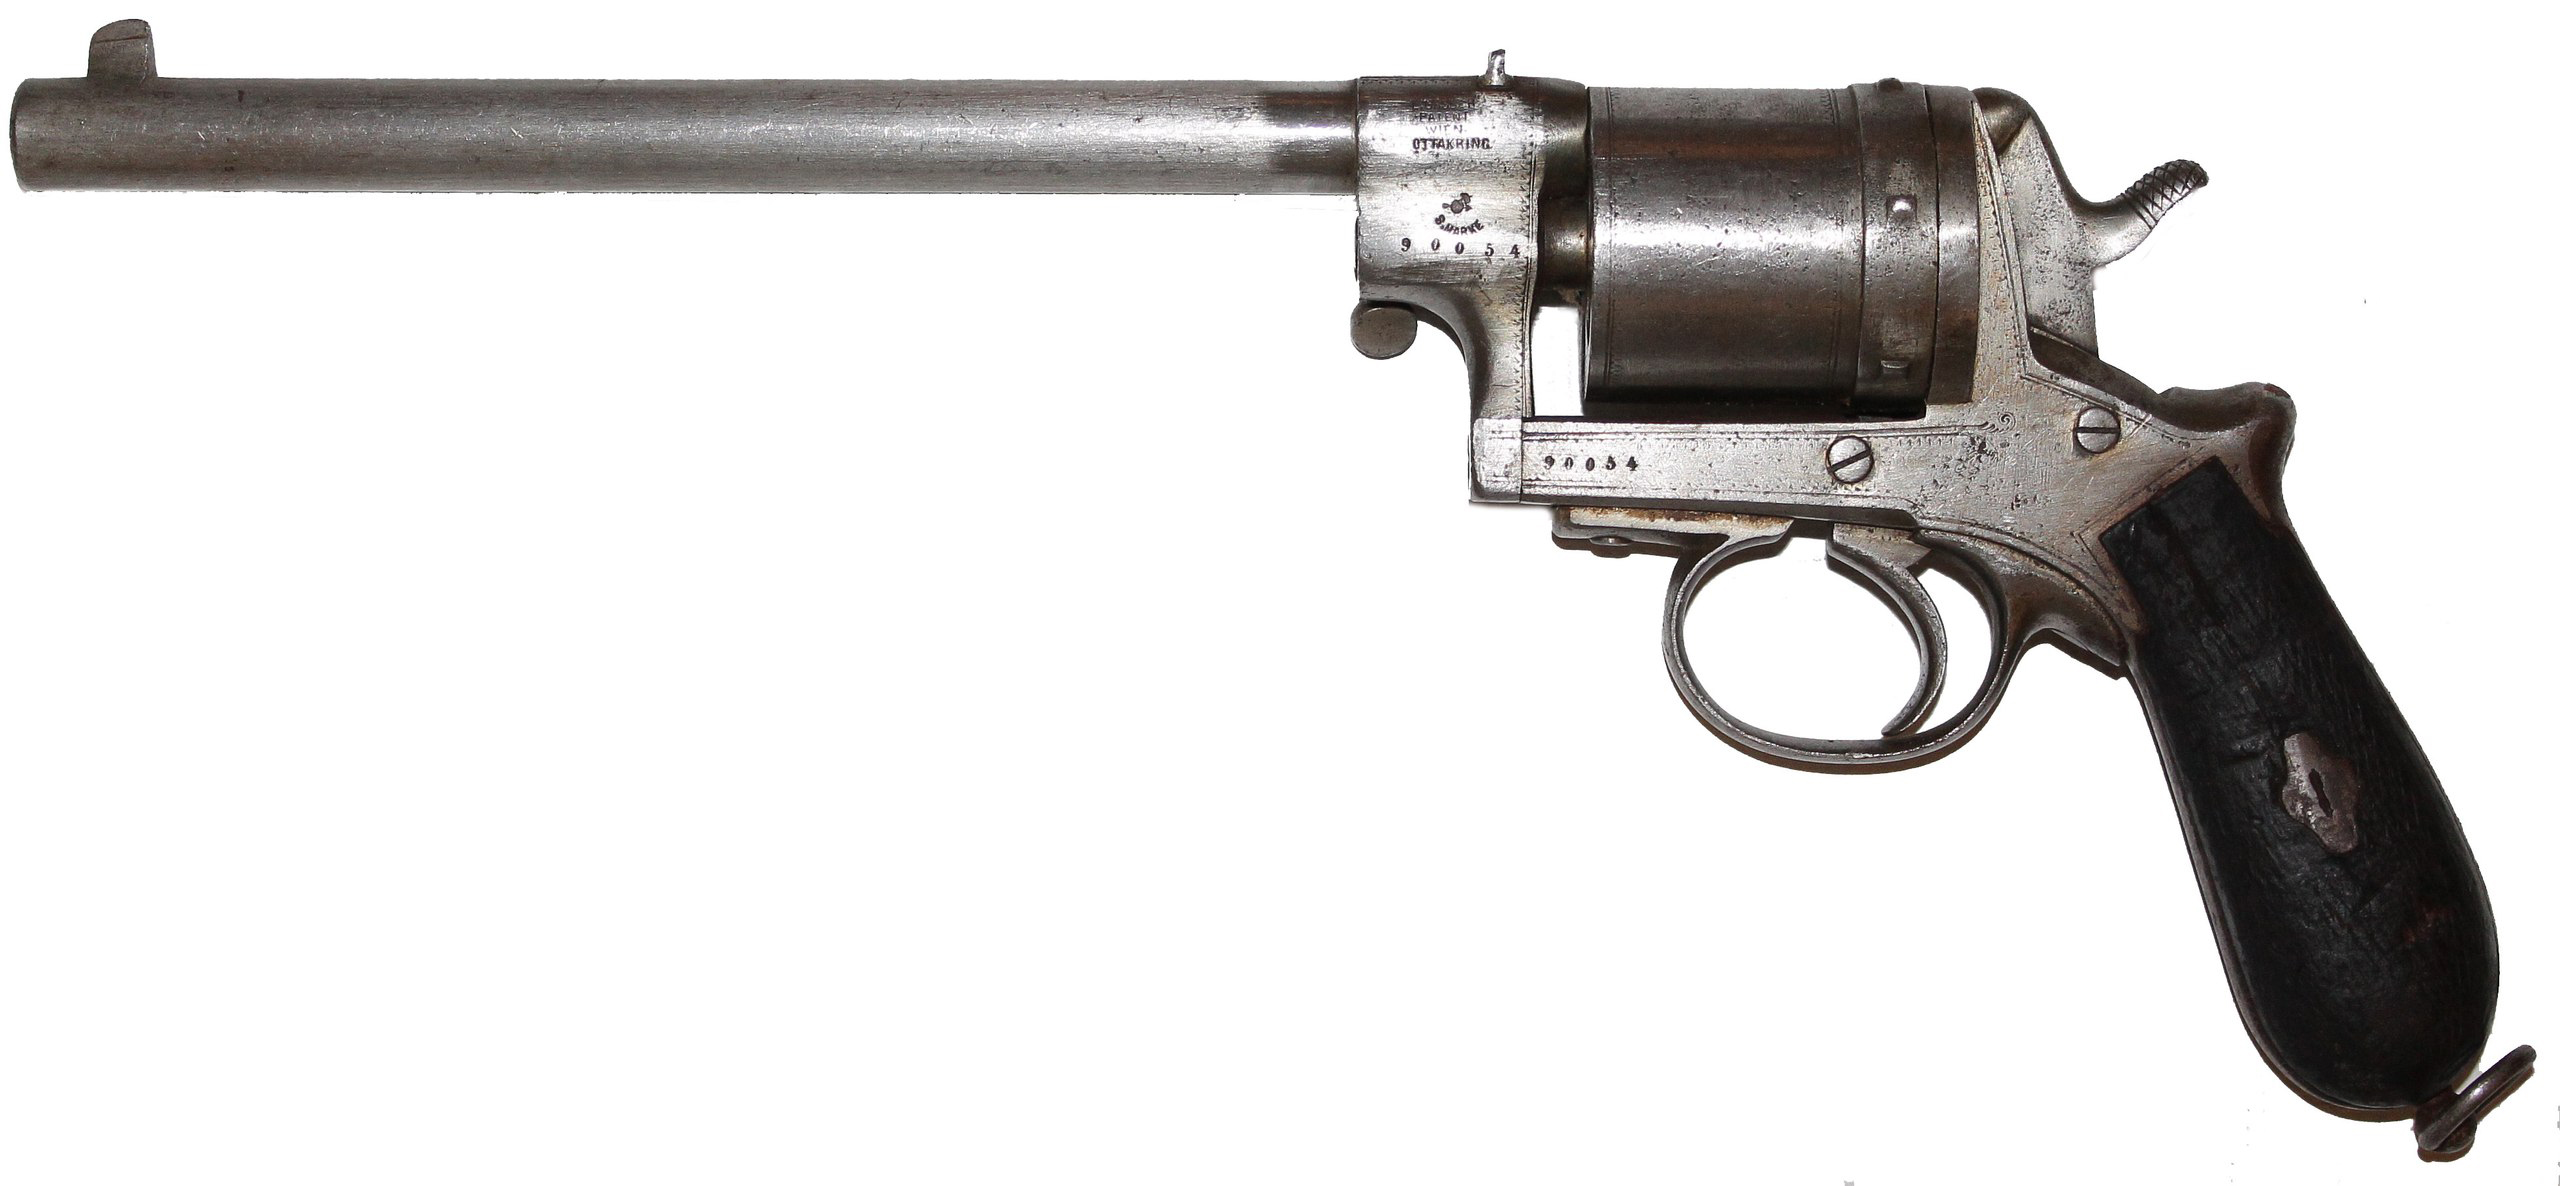 Армейский револьвер Гассера, сделанный в Австро-Венгрии по заказу Черногории